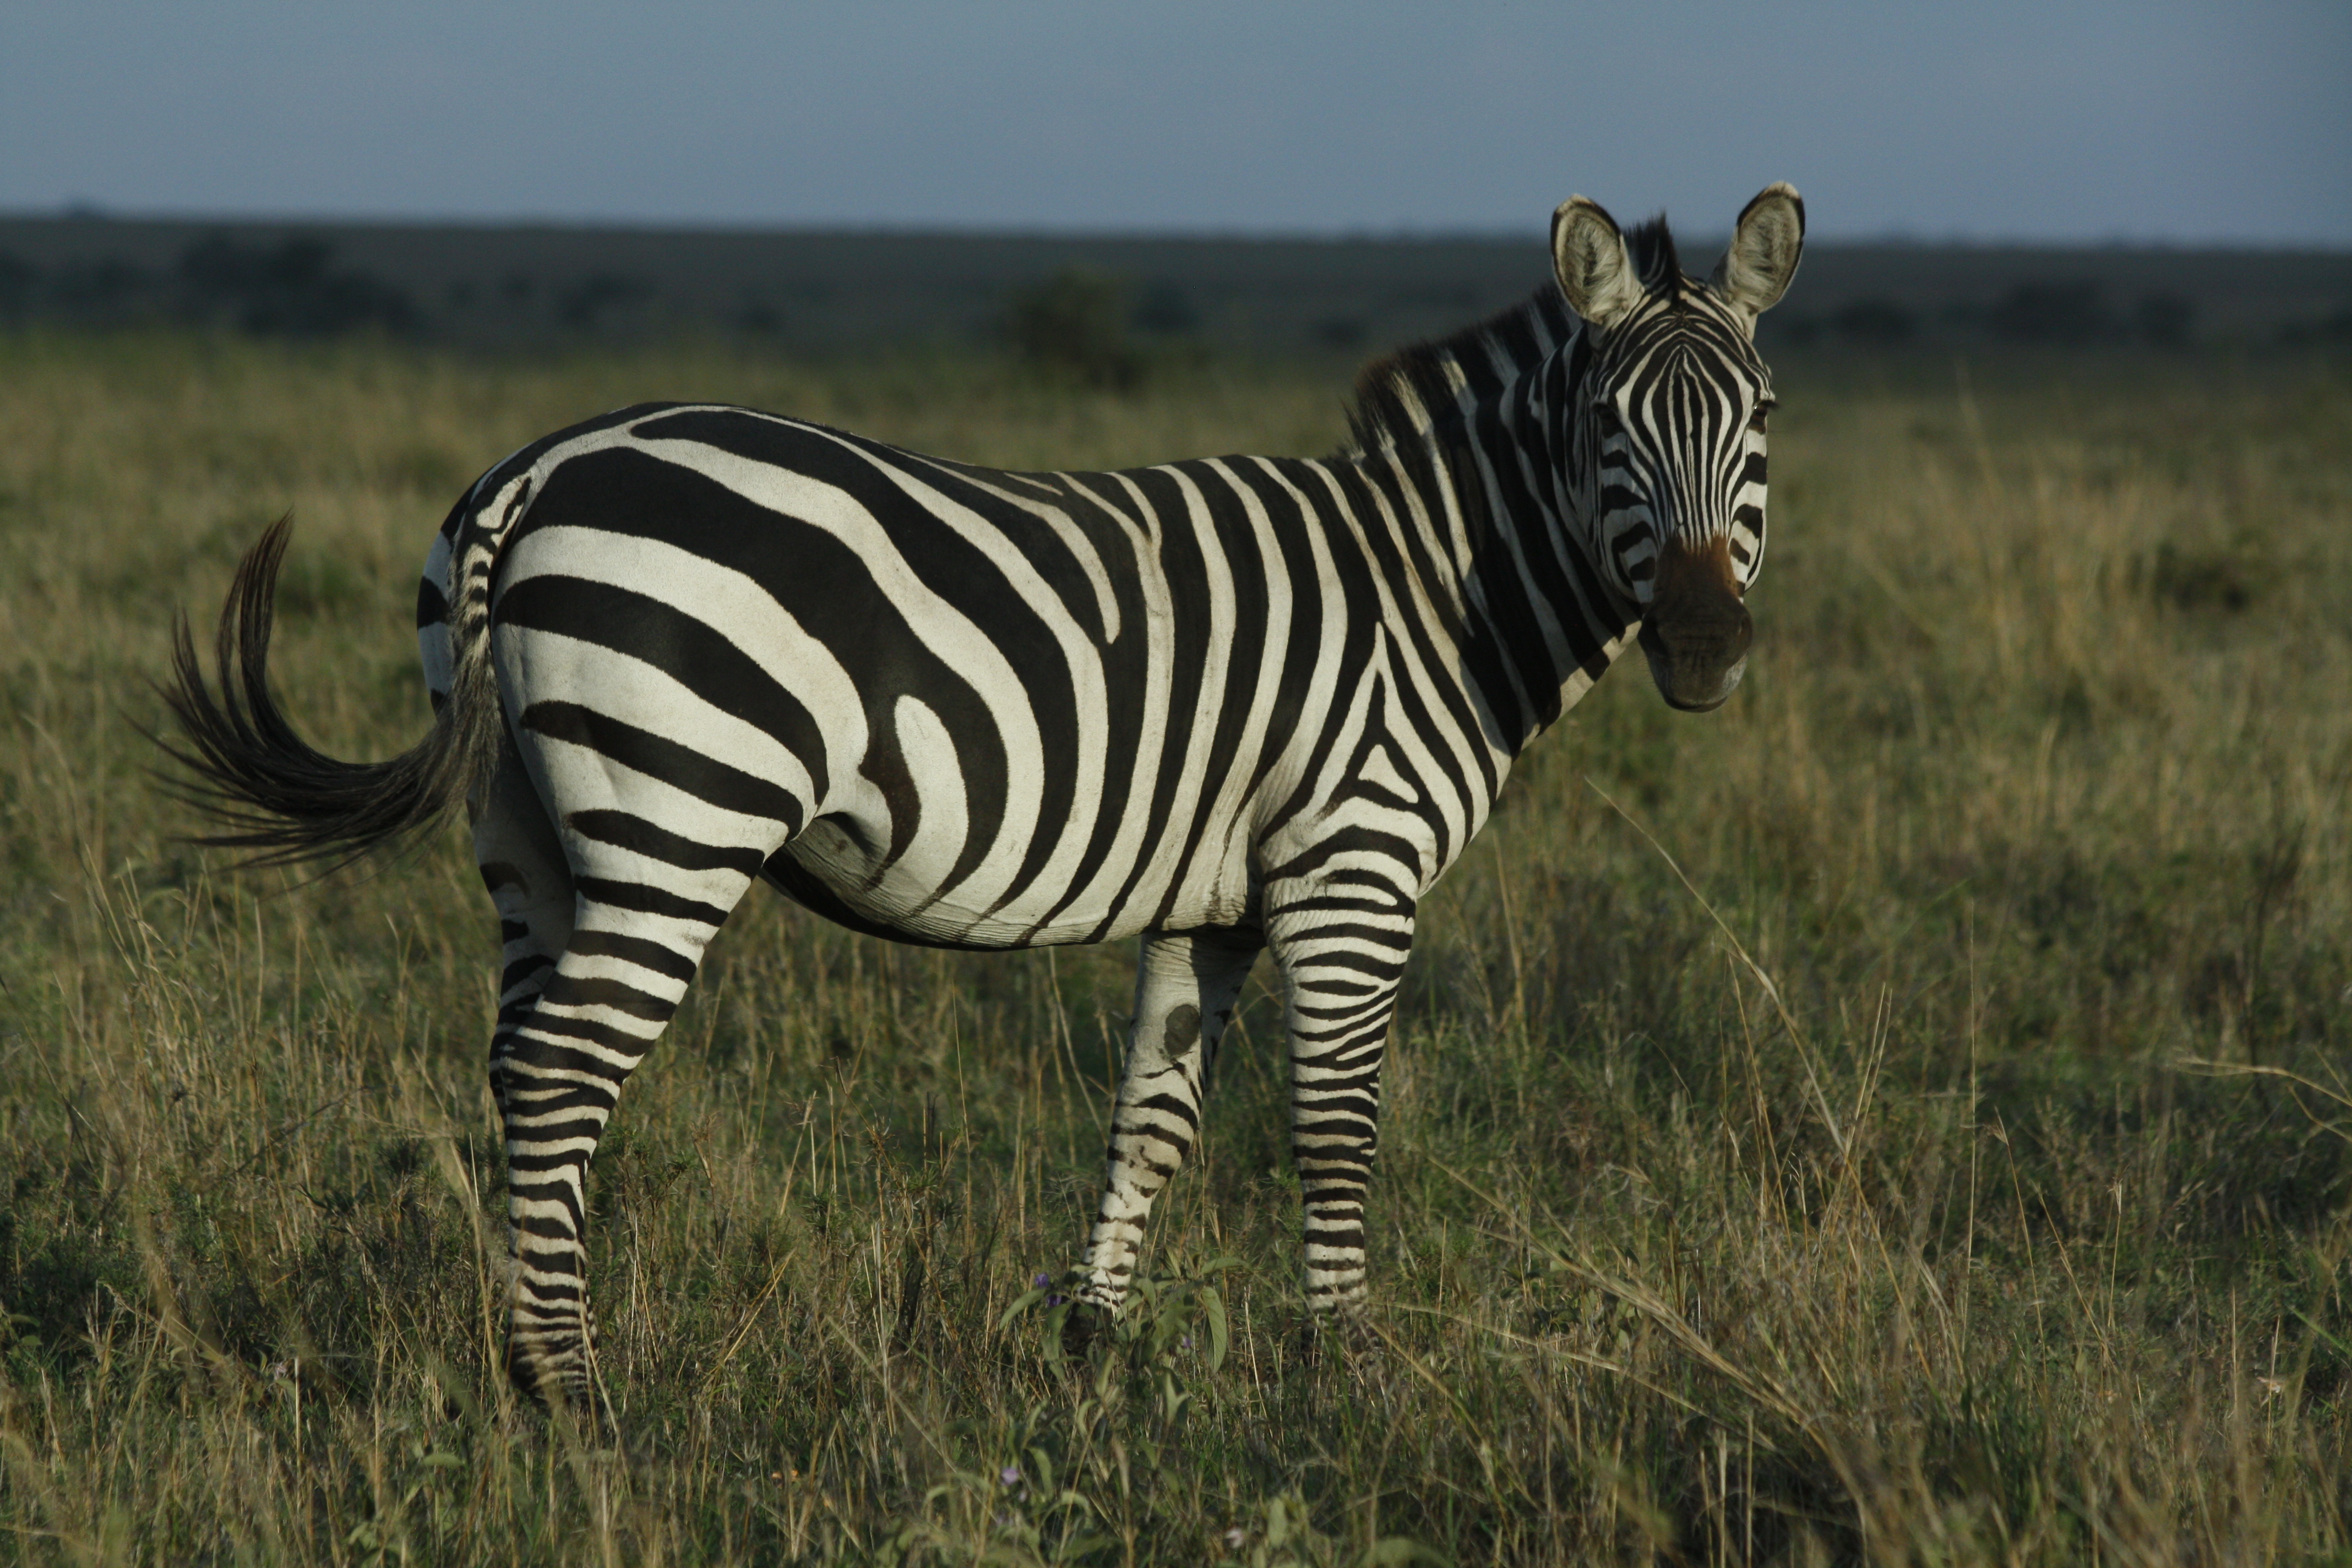 Ngorongoro and Serengeti